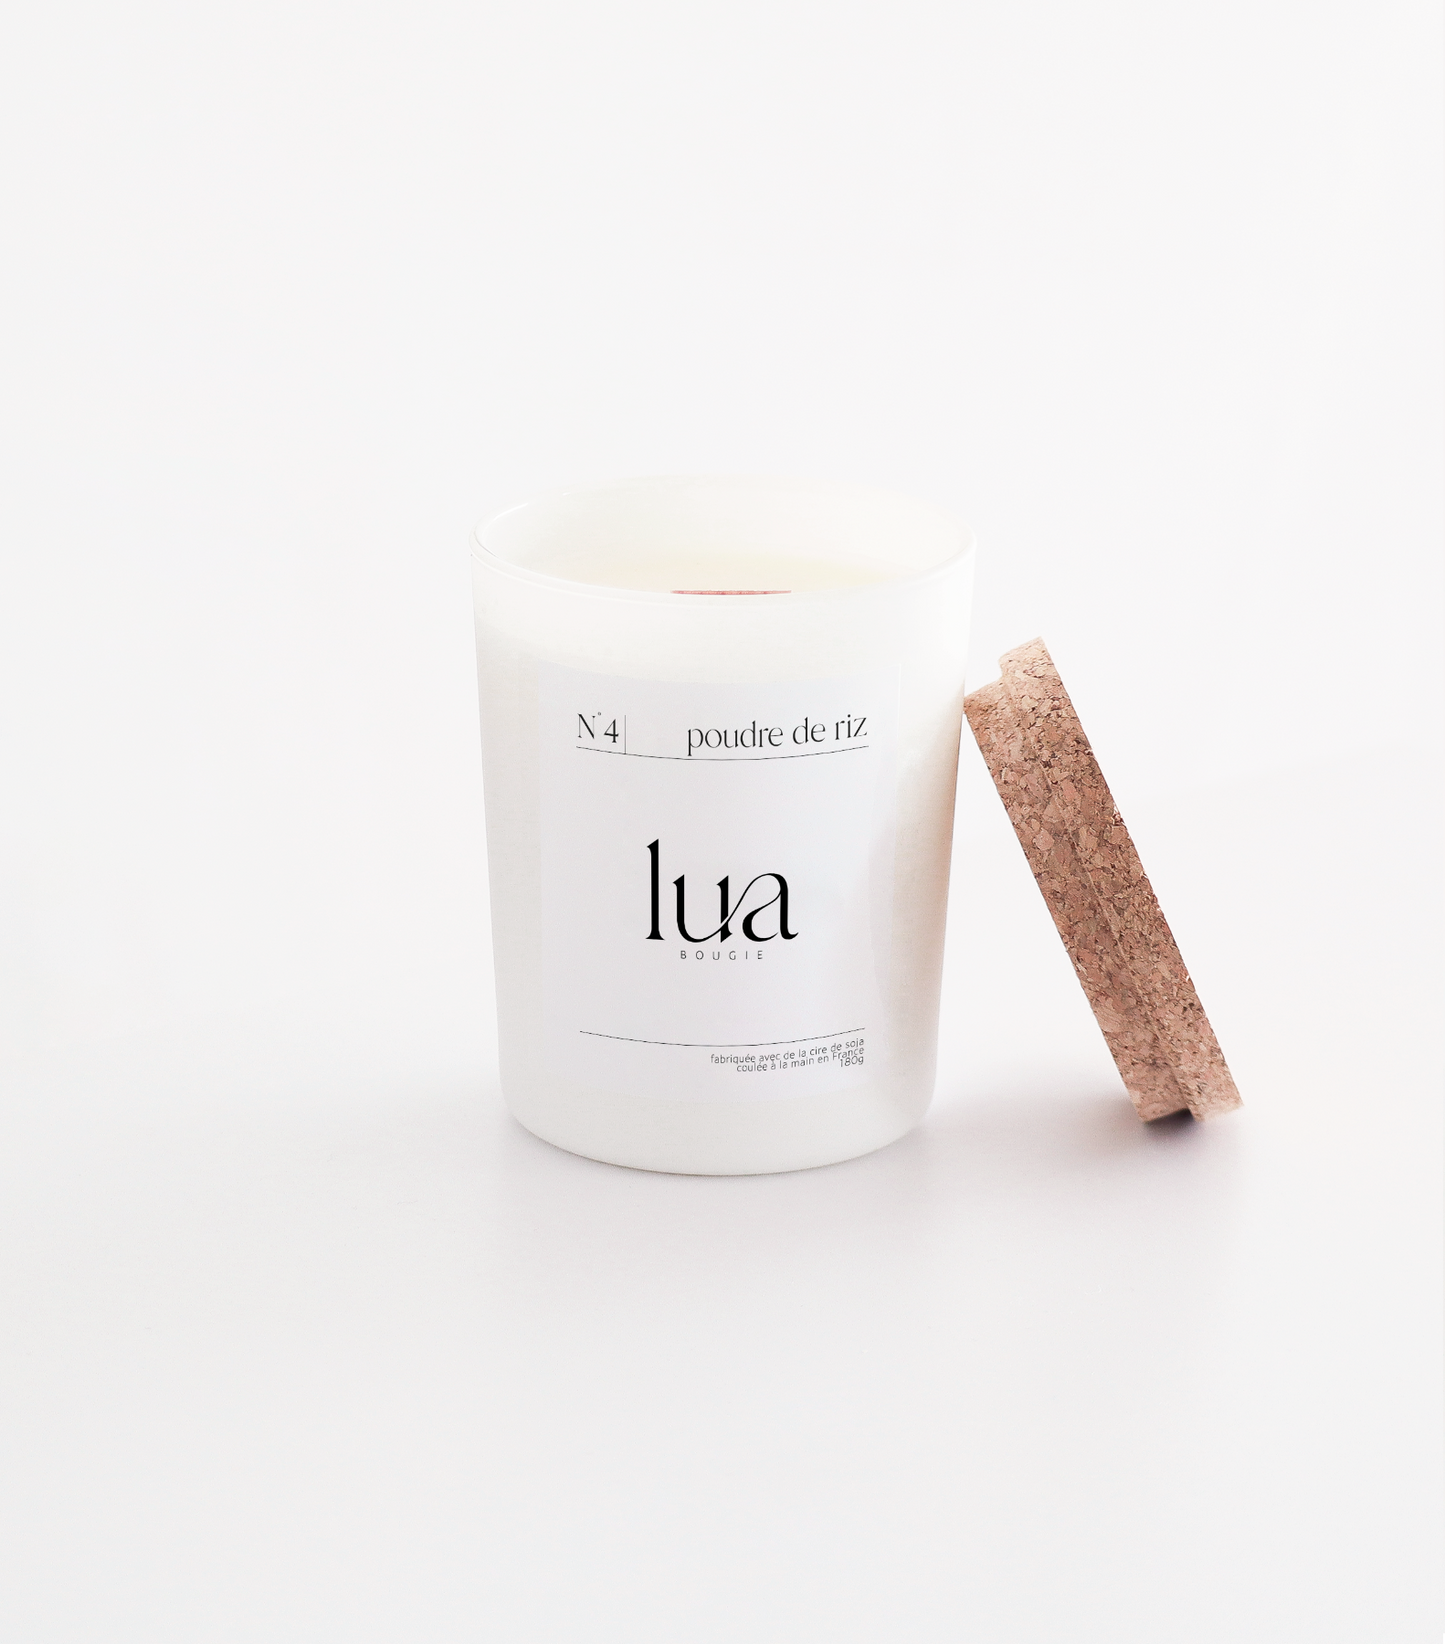 Bougie Lua parfumée et rechargeables, parfum poudre de riz, contenant blanc 180g. 